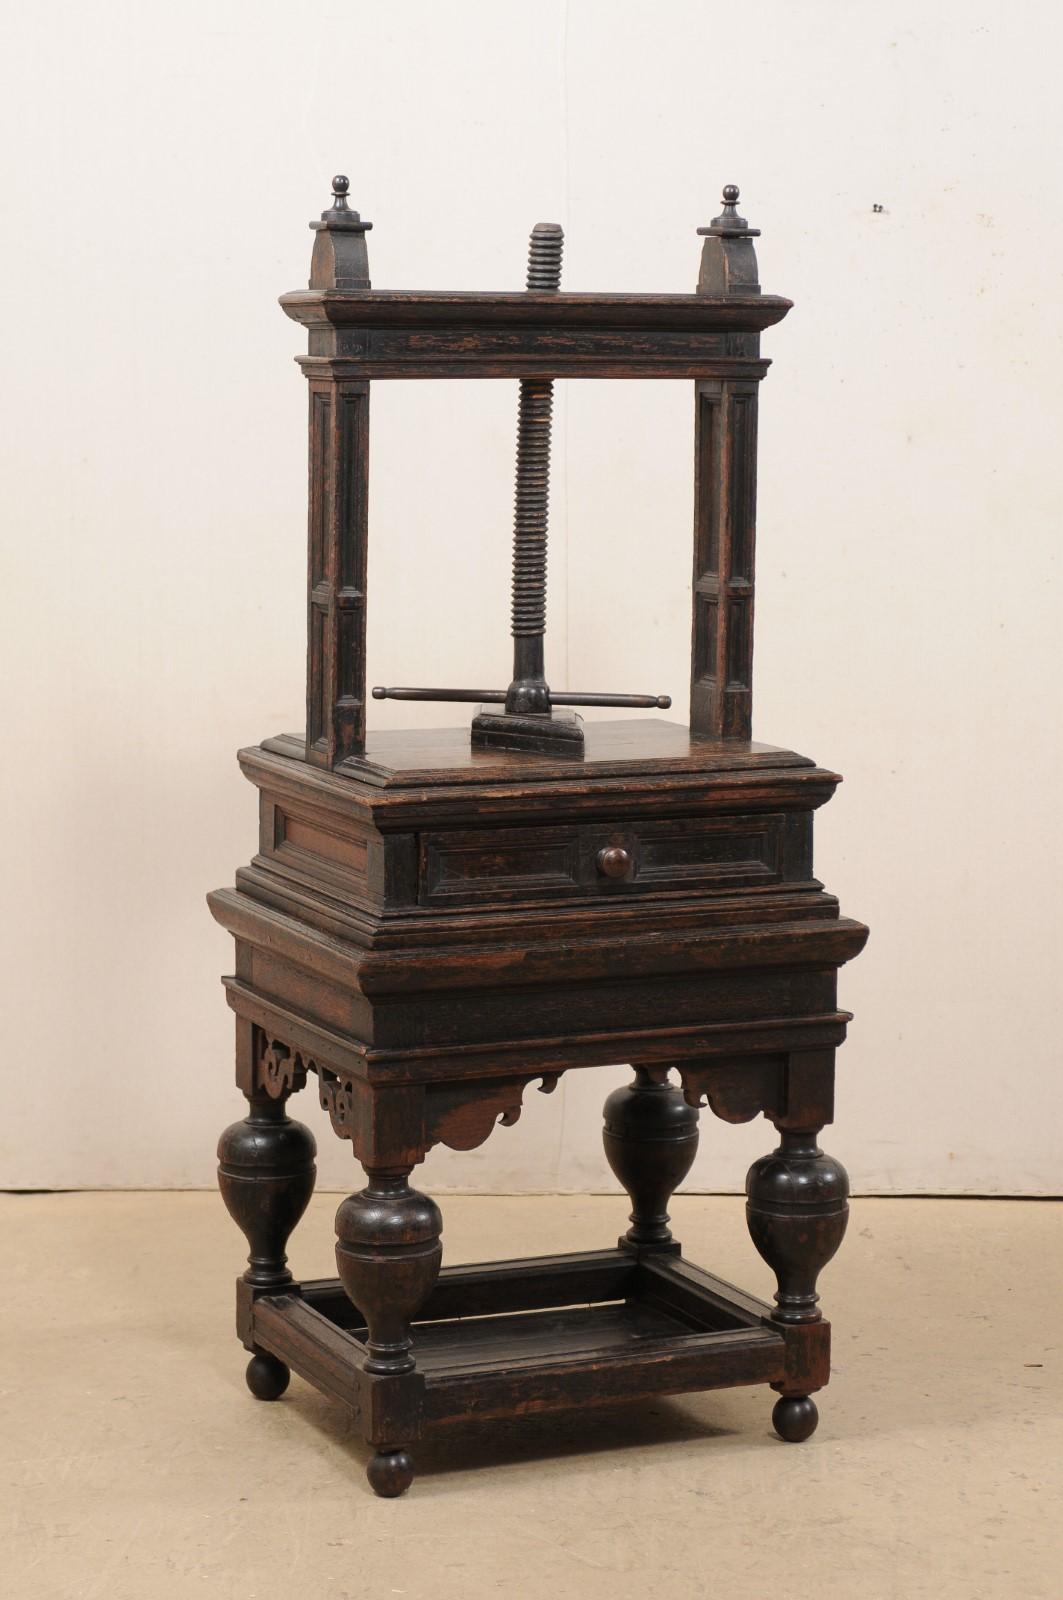 Eine flämische freistehende Buchpresse aus dem 18. Jahrhundert, möglicherweise älter. Diese antike Buchpresse aus Belgien ist ein fabelhaftes dekoratives Kunstwerk für sich. Mit einer Höhe von ca. 5,5 Fuß besteht dieses Stück aus Eichenholz aus